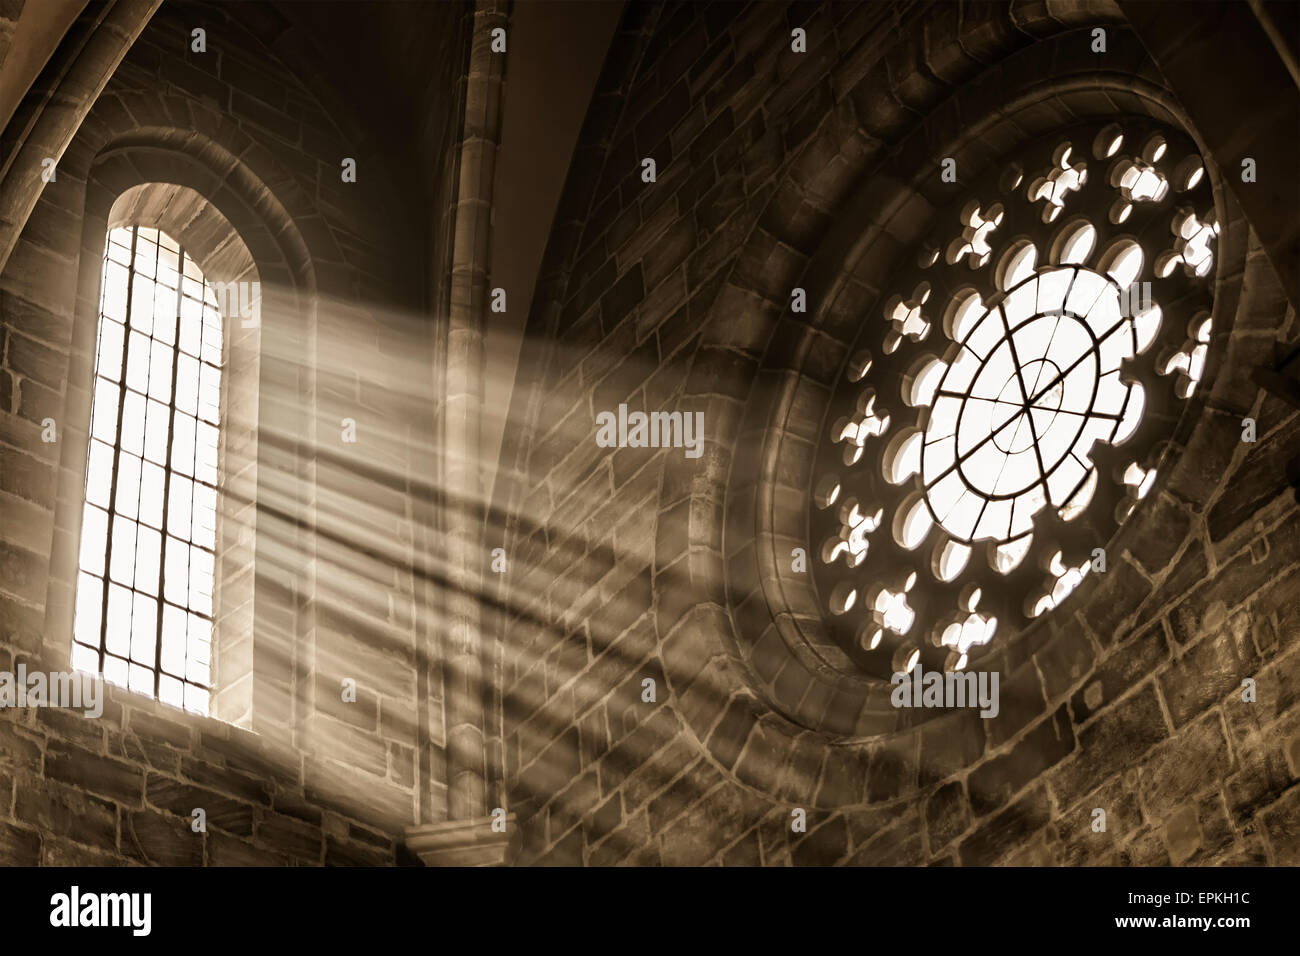 Immagine di una finestra in una chiesa con raggi solari Foto Stock